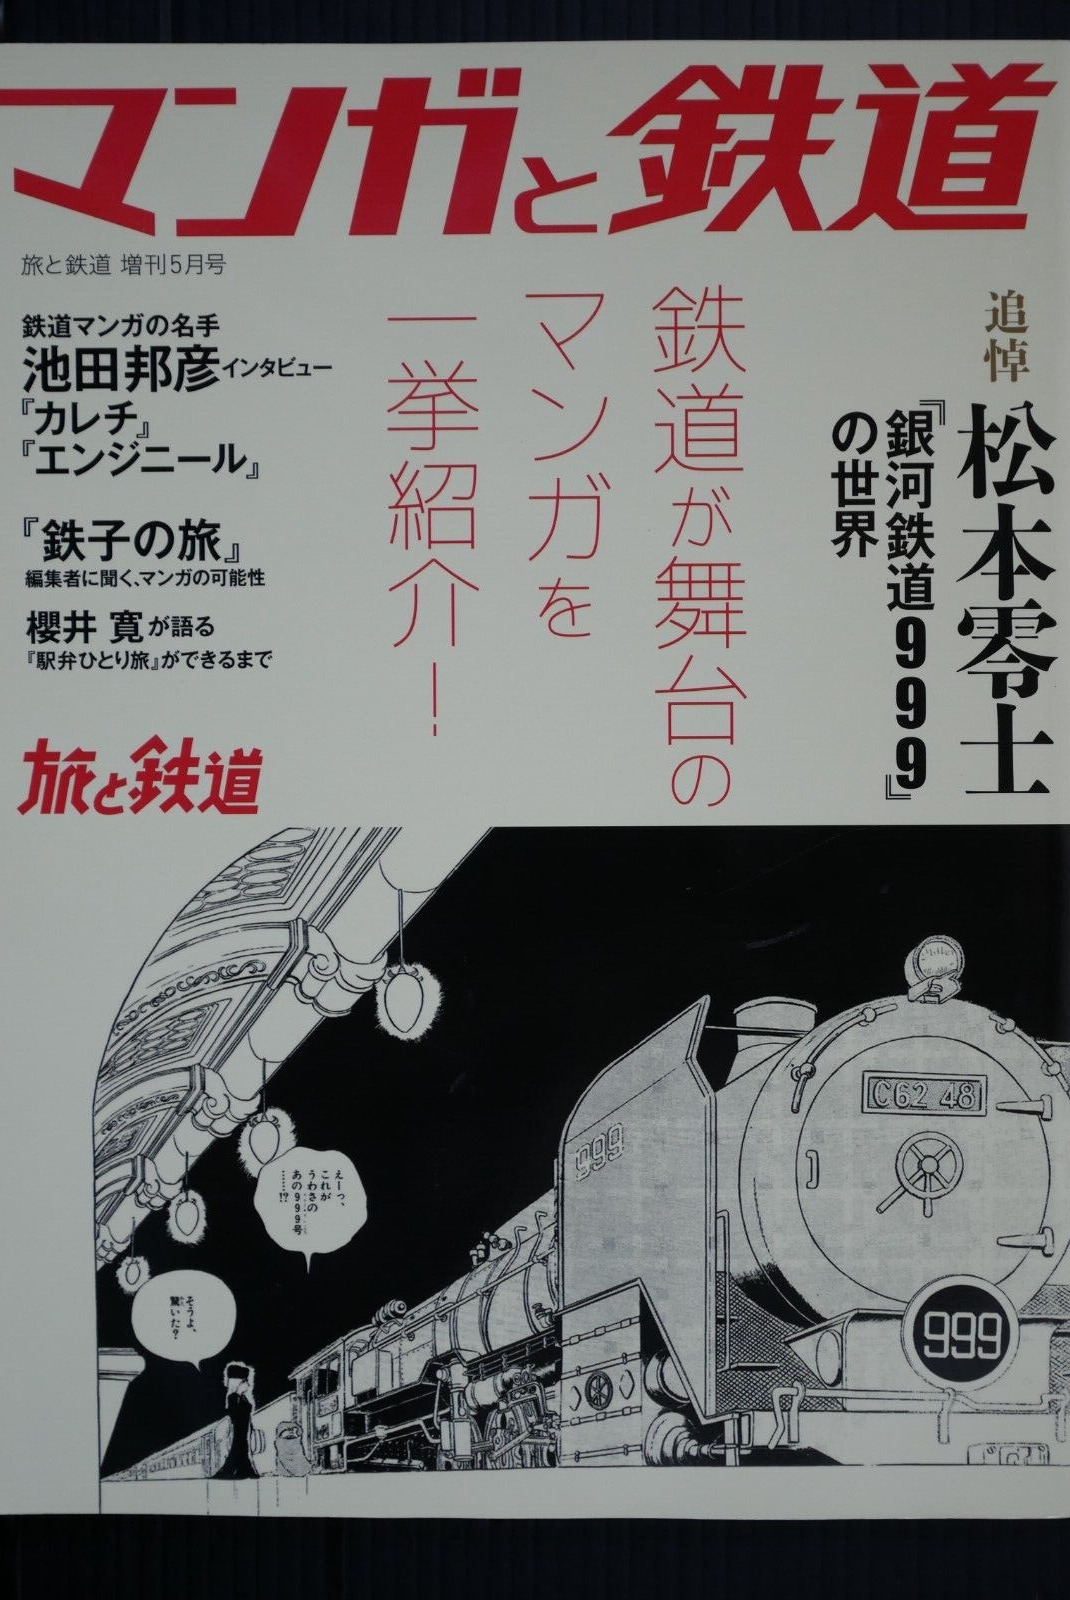 Travel and Railway 2023 May (Magazine) Manga & Railways, Leiji Matsumoto JAPAN